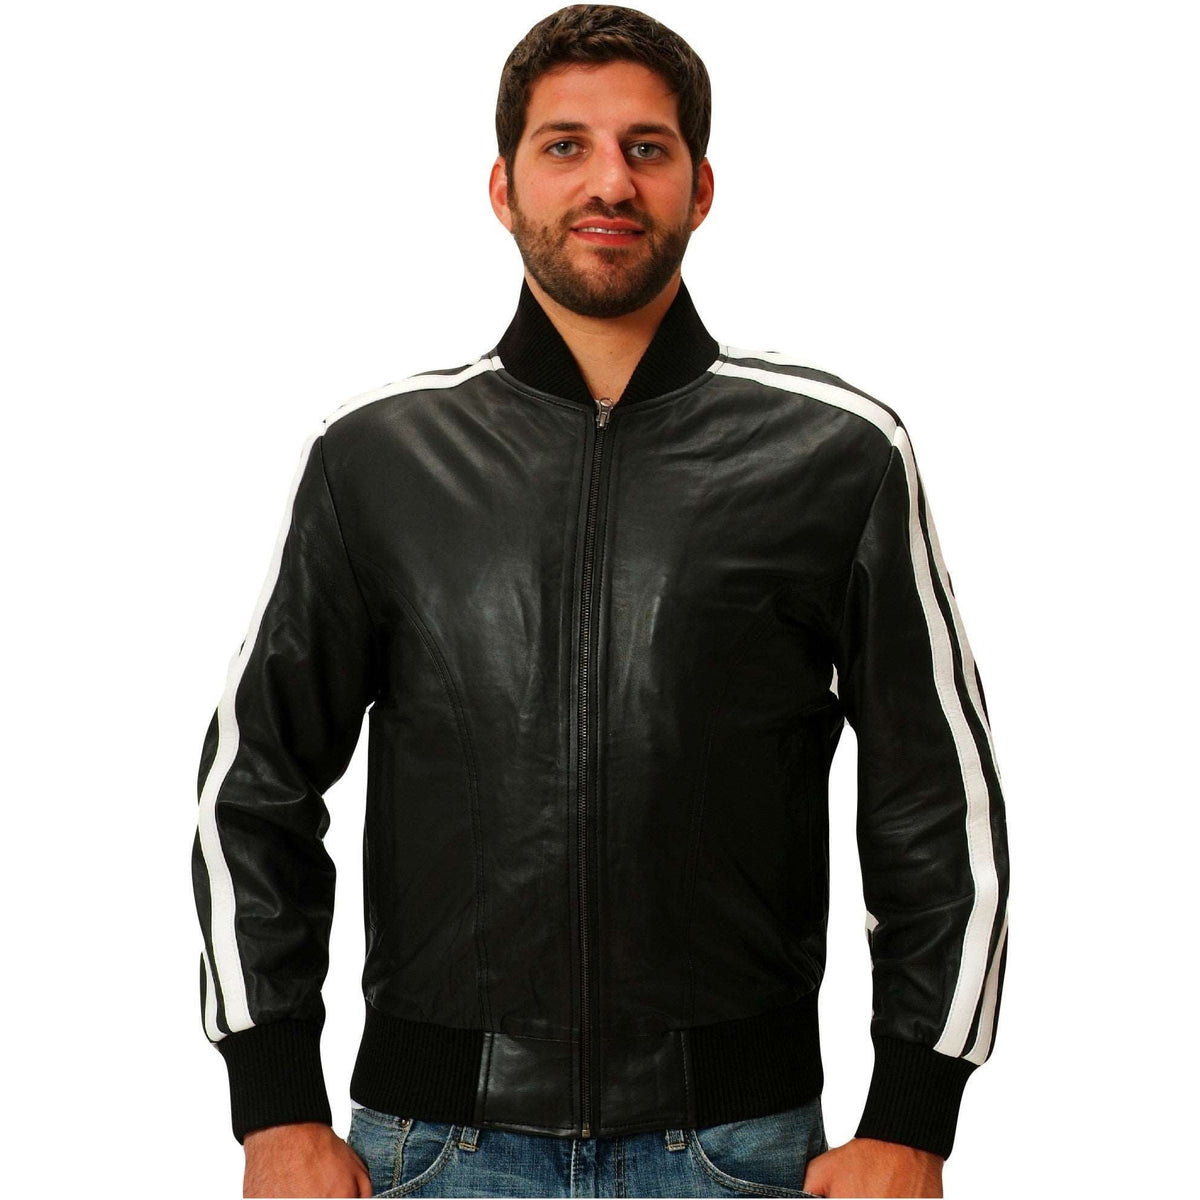 Mens black leather track jacket front